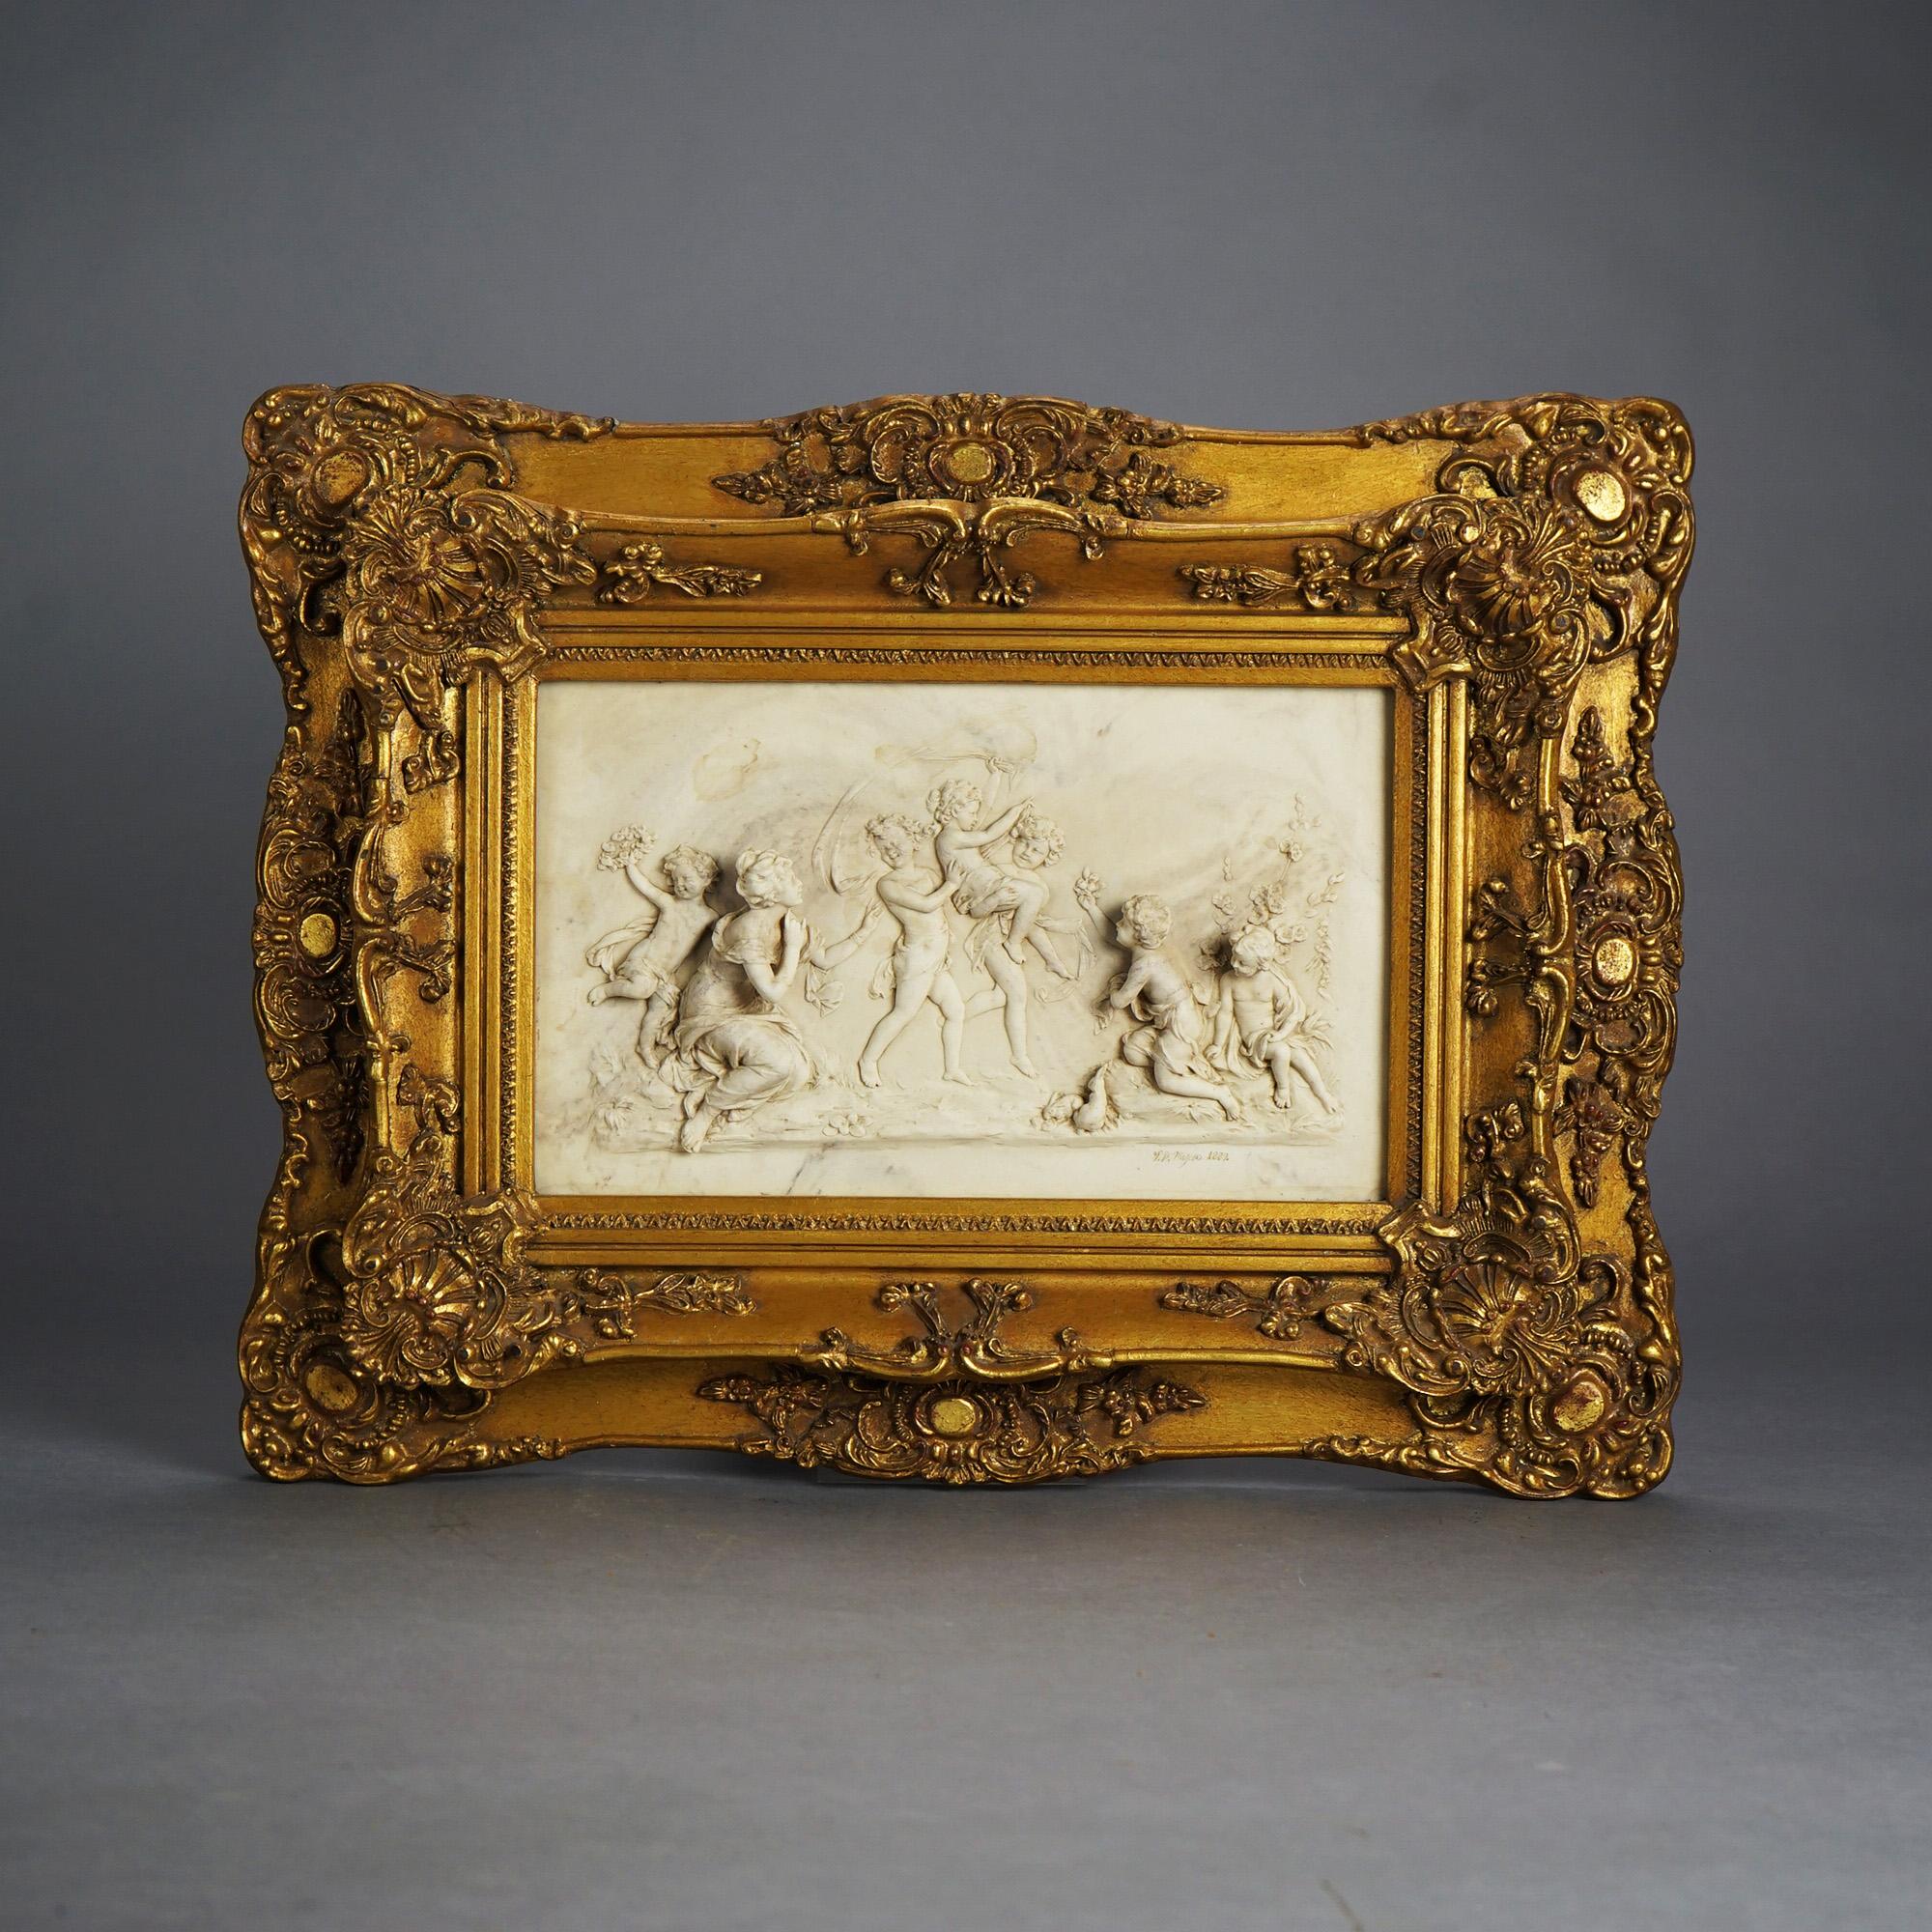 Plaque classique ancienne offrant une scène de chérubin en marbre sculpté en haut-relief, signée comme sur la photographie, A.C.I. ; cadre plus récent en bois doré.

Dimensions - 16 